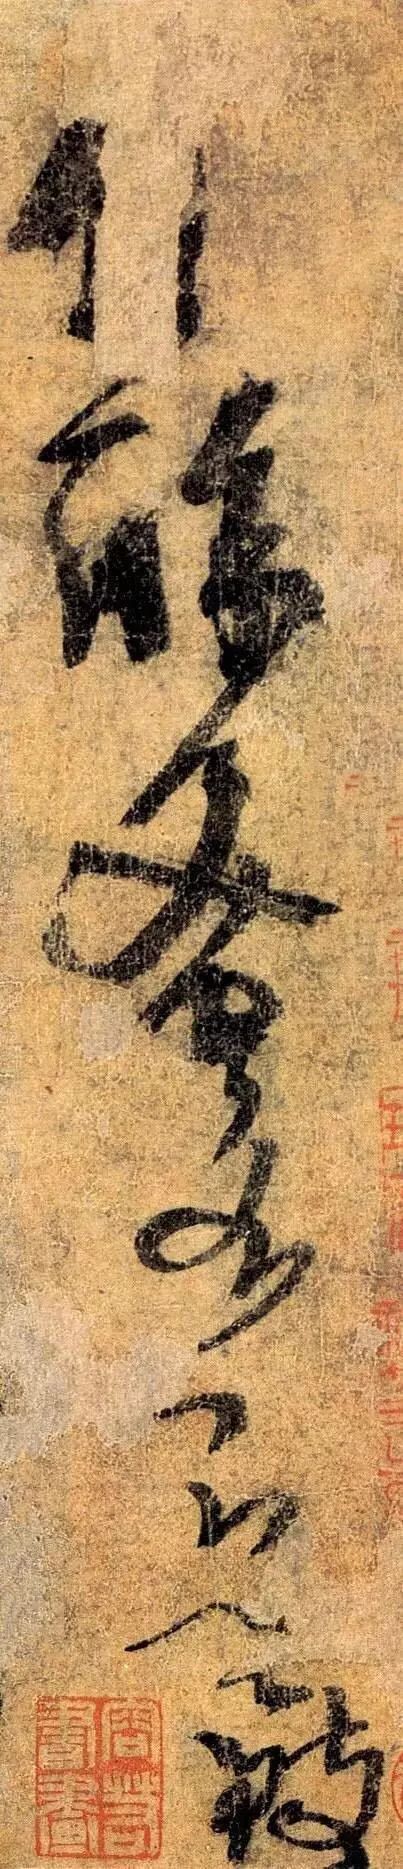 杨凝式唯一的传世草书作品《夏热帖》